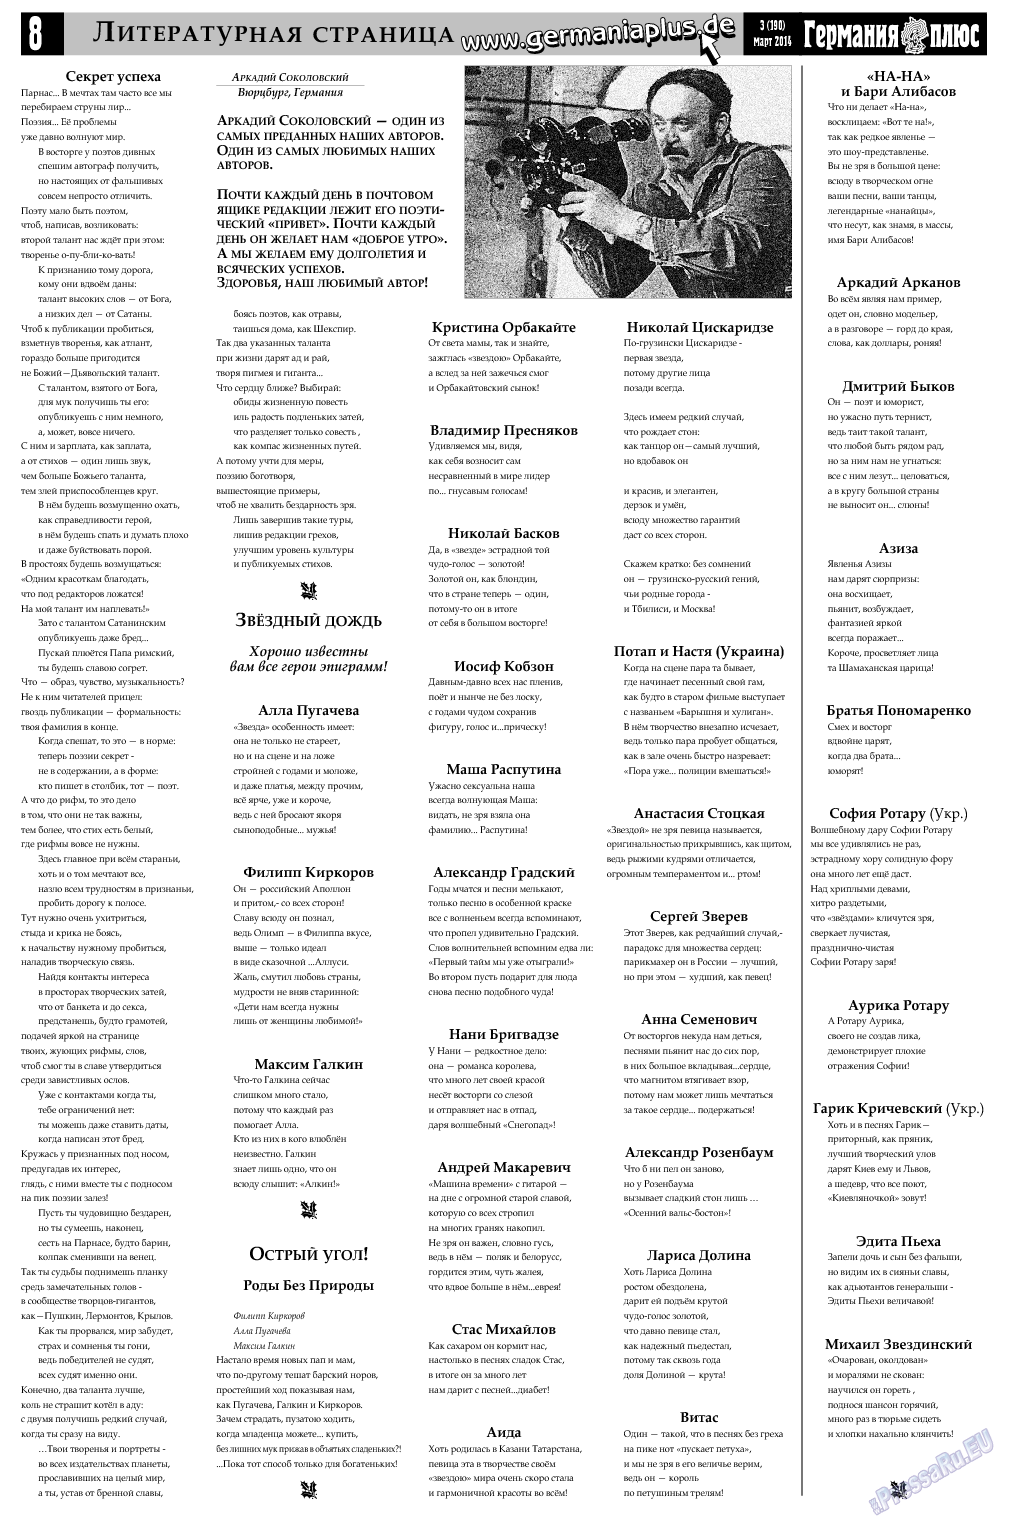 Германия плюс, газета. 2014 №3 стр.8